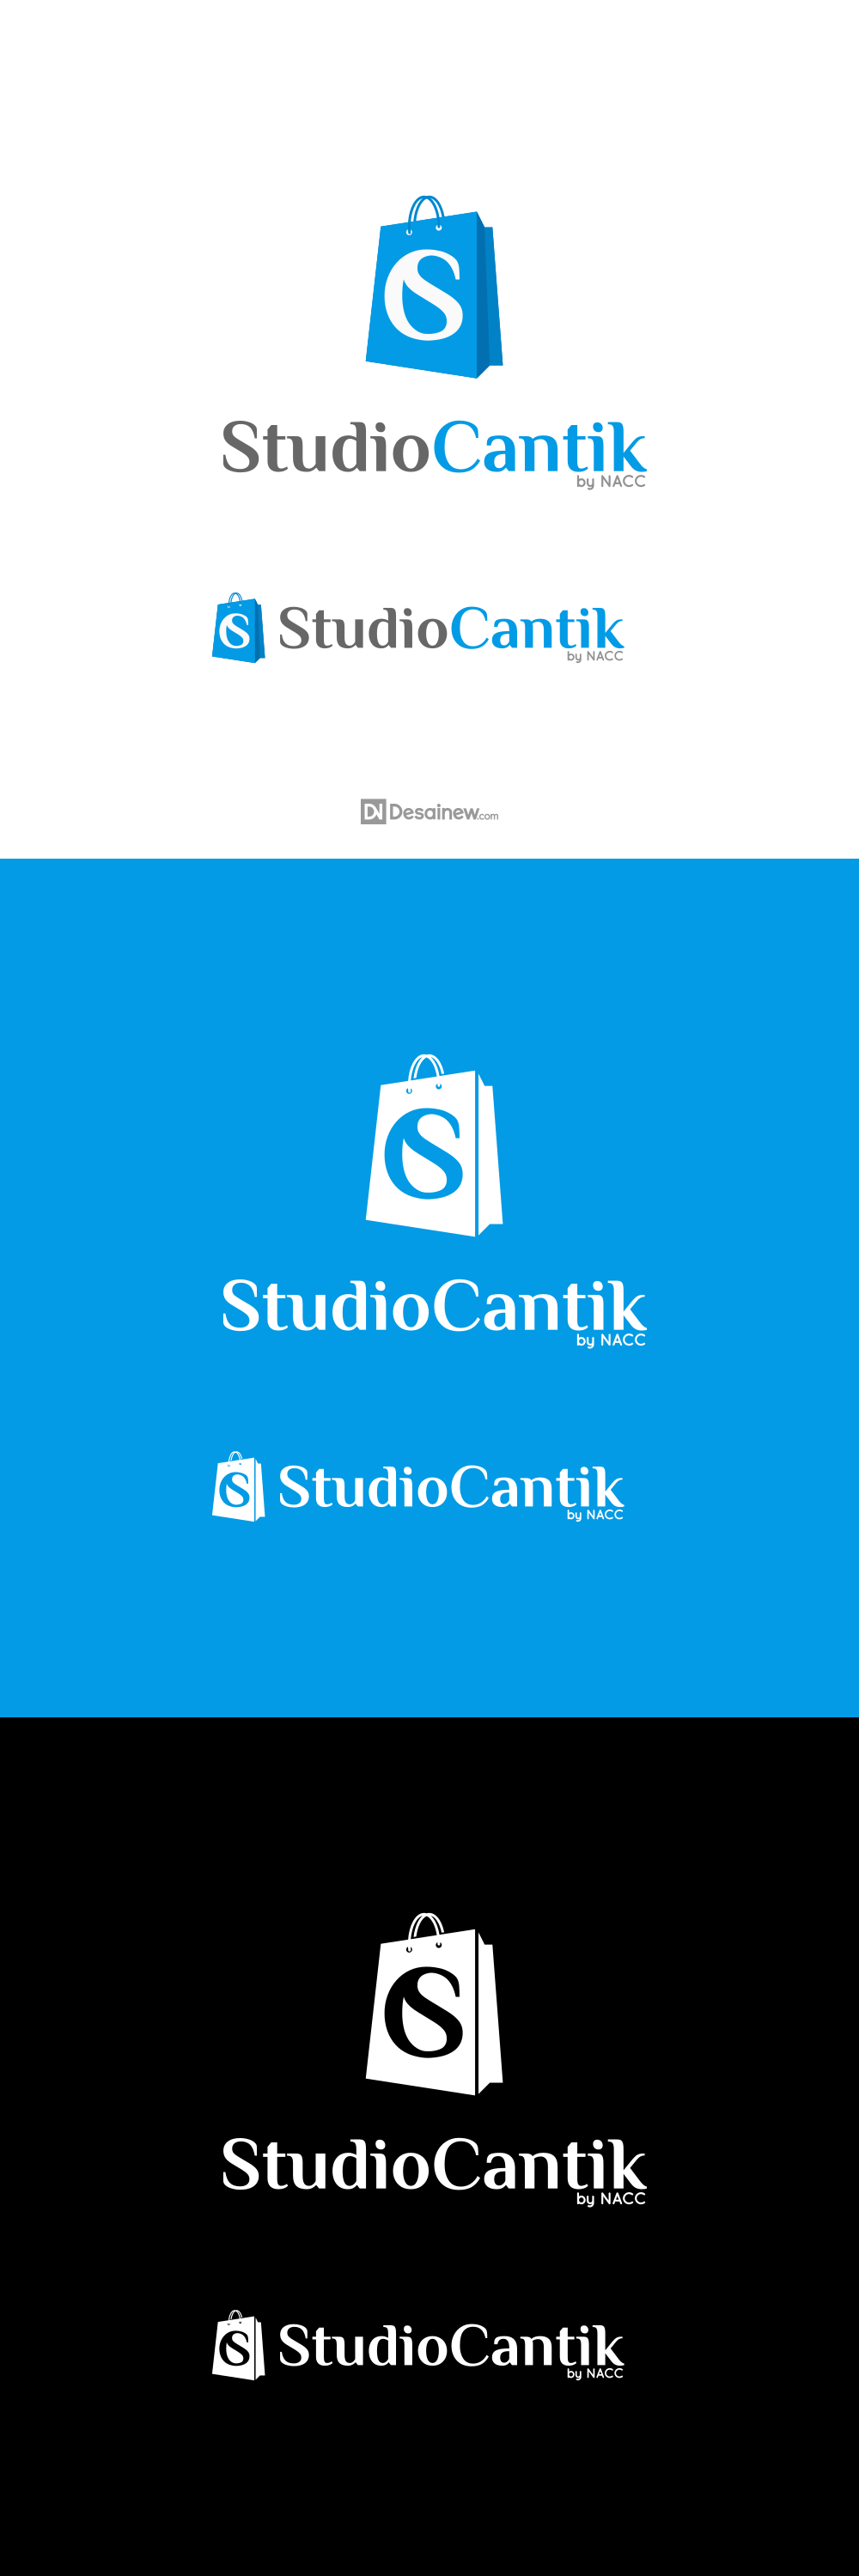 Studio Cantik Logo Design Project Portfolio Desainew